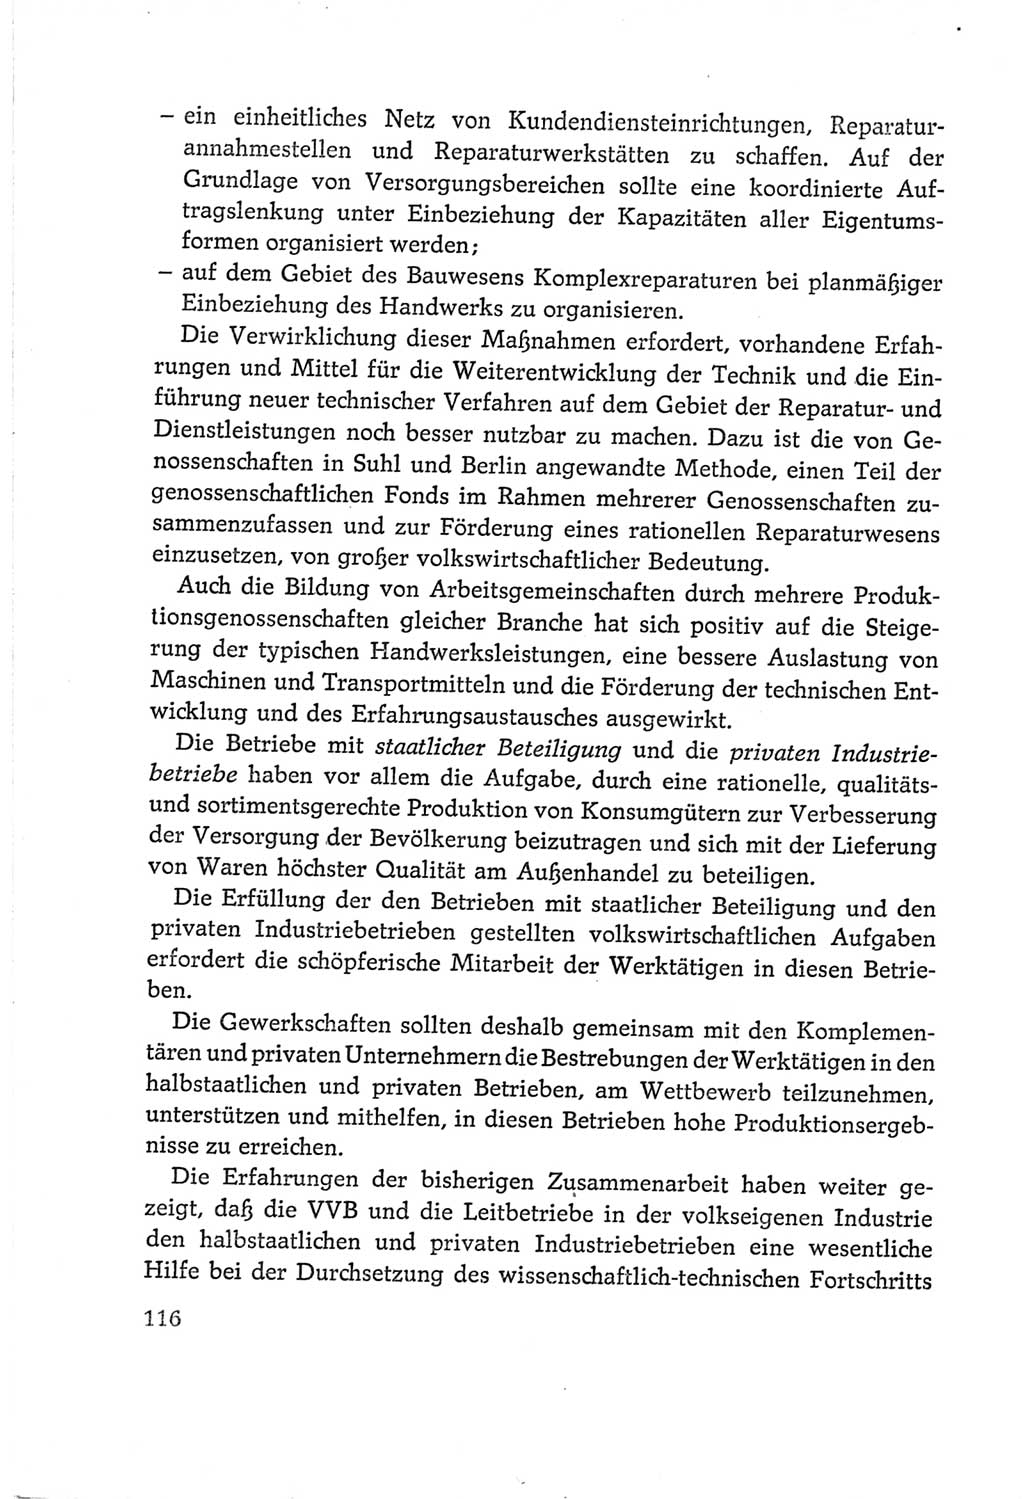 Protokoll der Verhandlungen des Ⅵ. Parteitages der Sozialistischen Einheitspartei Deutschlands (SED) [Deutsche Demokratische Republik (DDR)] 1963, Band Ⅰ, Seite 116 (Prot. Verh. Ⅵ. PT SED DDR 1963, Bd. Ⅰ, S. 116)